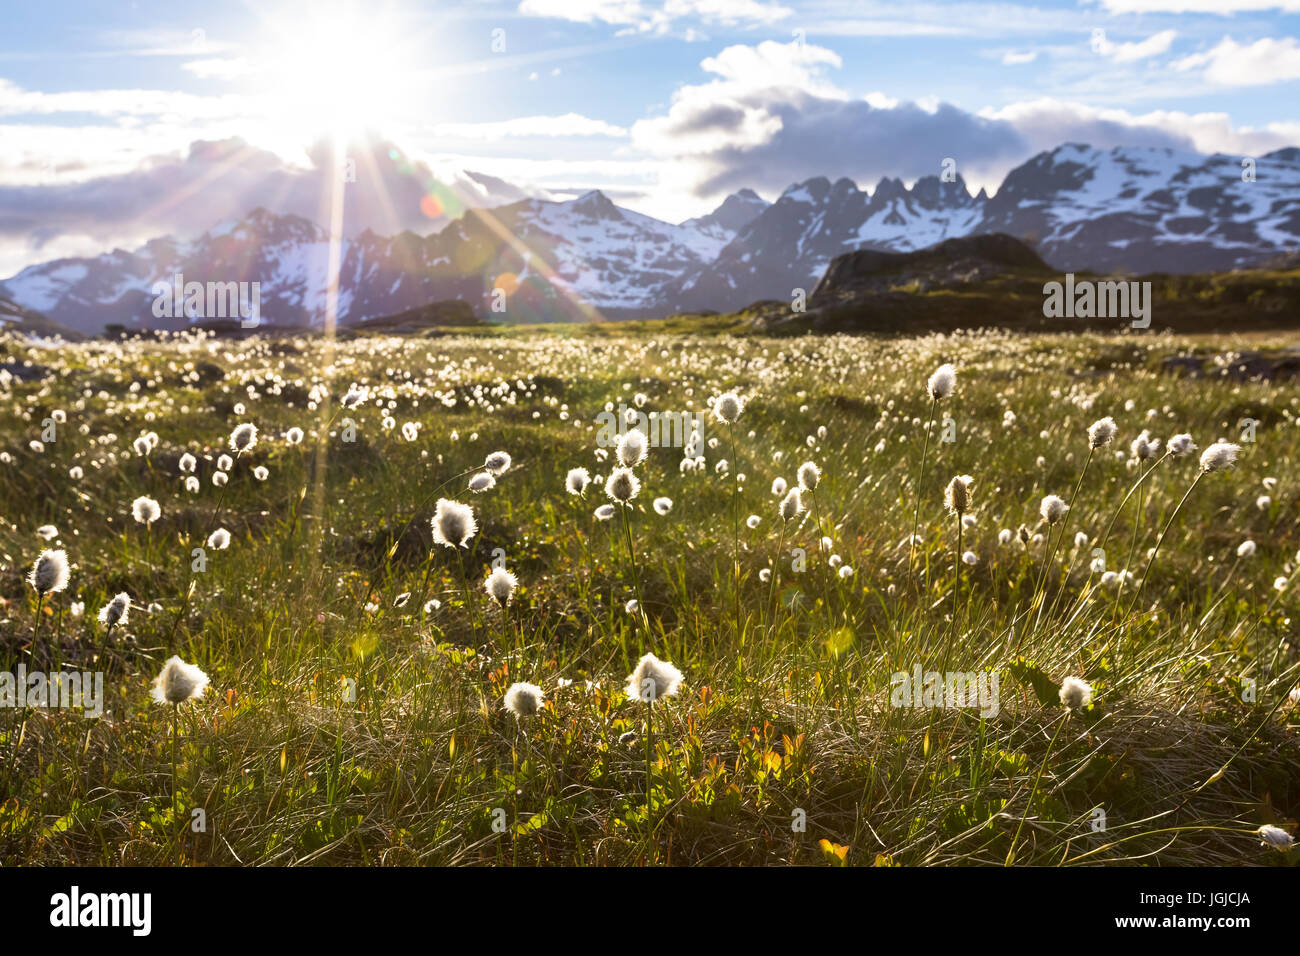 Paysage norvégien en été avec le soleil et montagnes en arrière-plan et eriophorum linaigrette de en fleurs en premier plan, la Norvège Banque D'Images